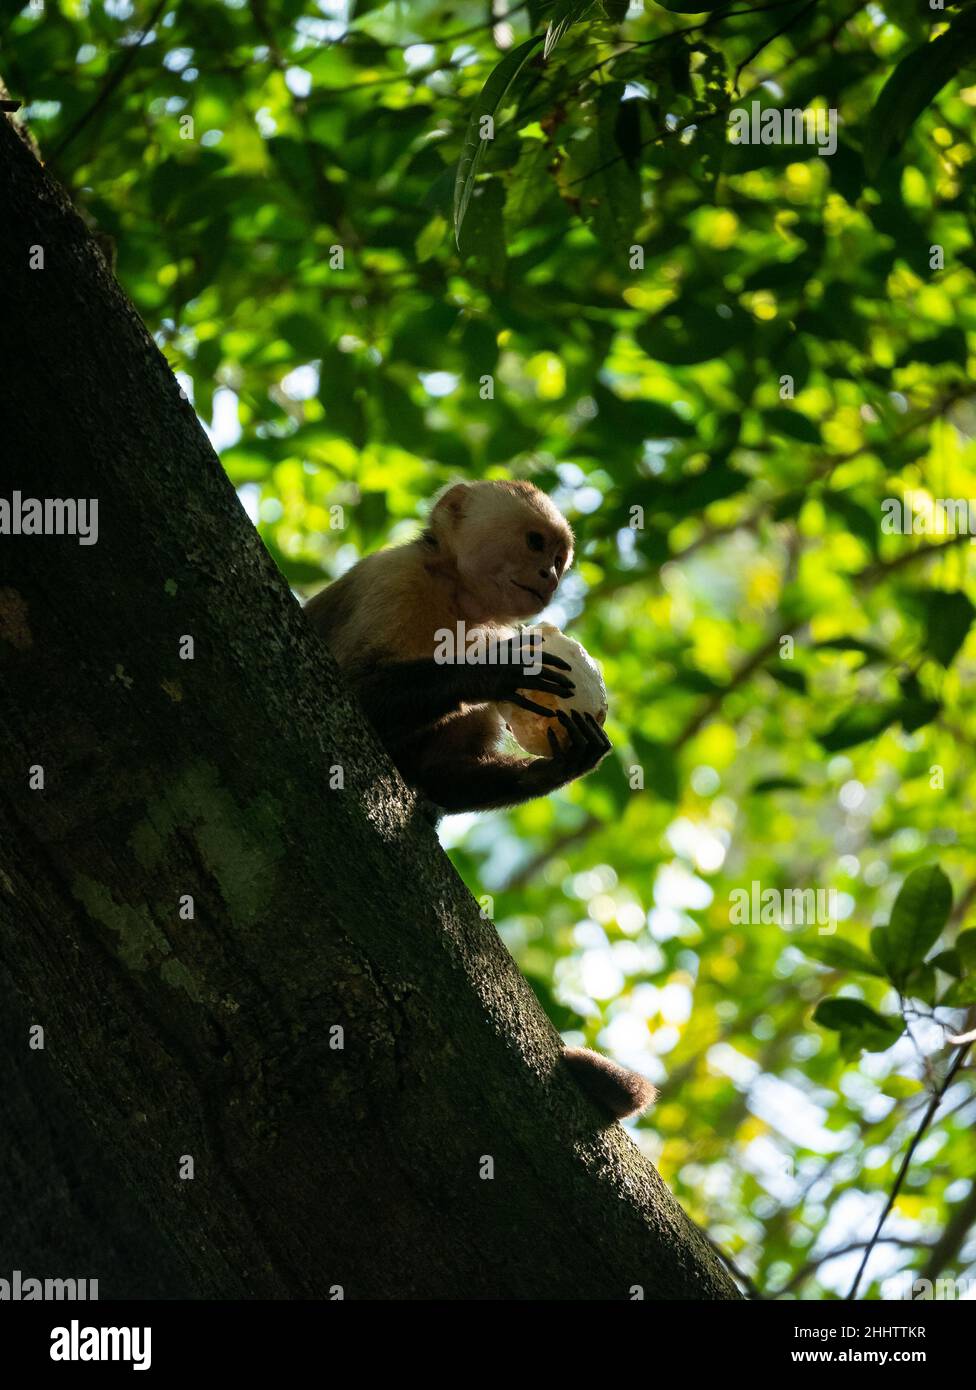 Le Capuchin panaméen à tête blanche (imitateur Cebus), également connu sous le nom de Capuchin panaméen ou d'Amérique centrale à tête blanche, est manger une pièce de coco Banque D'Images